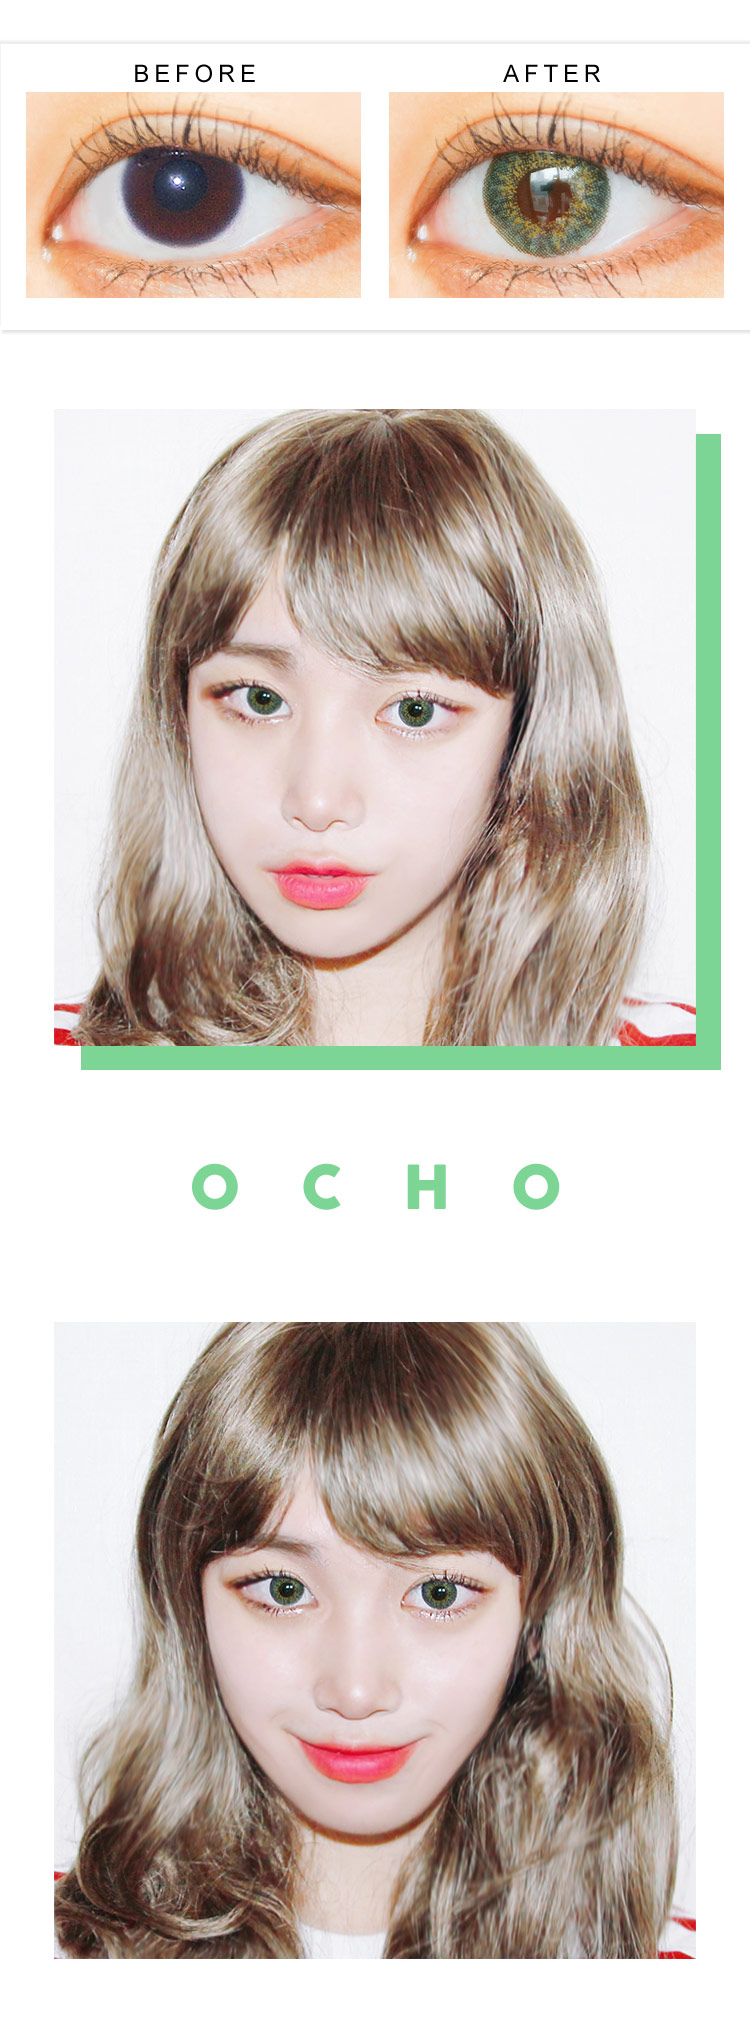 CNC / OCHO GREEN